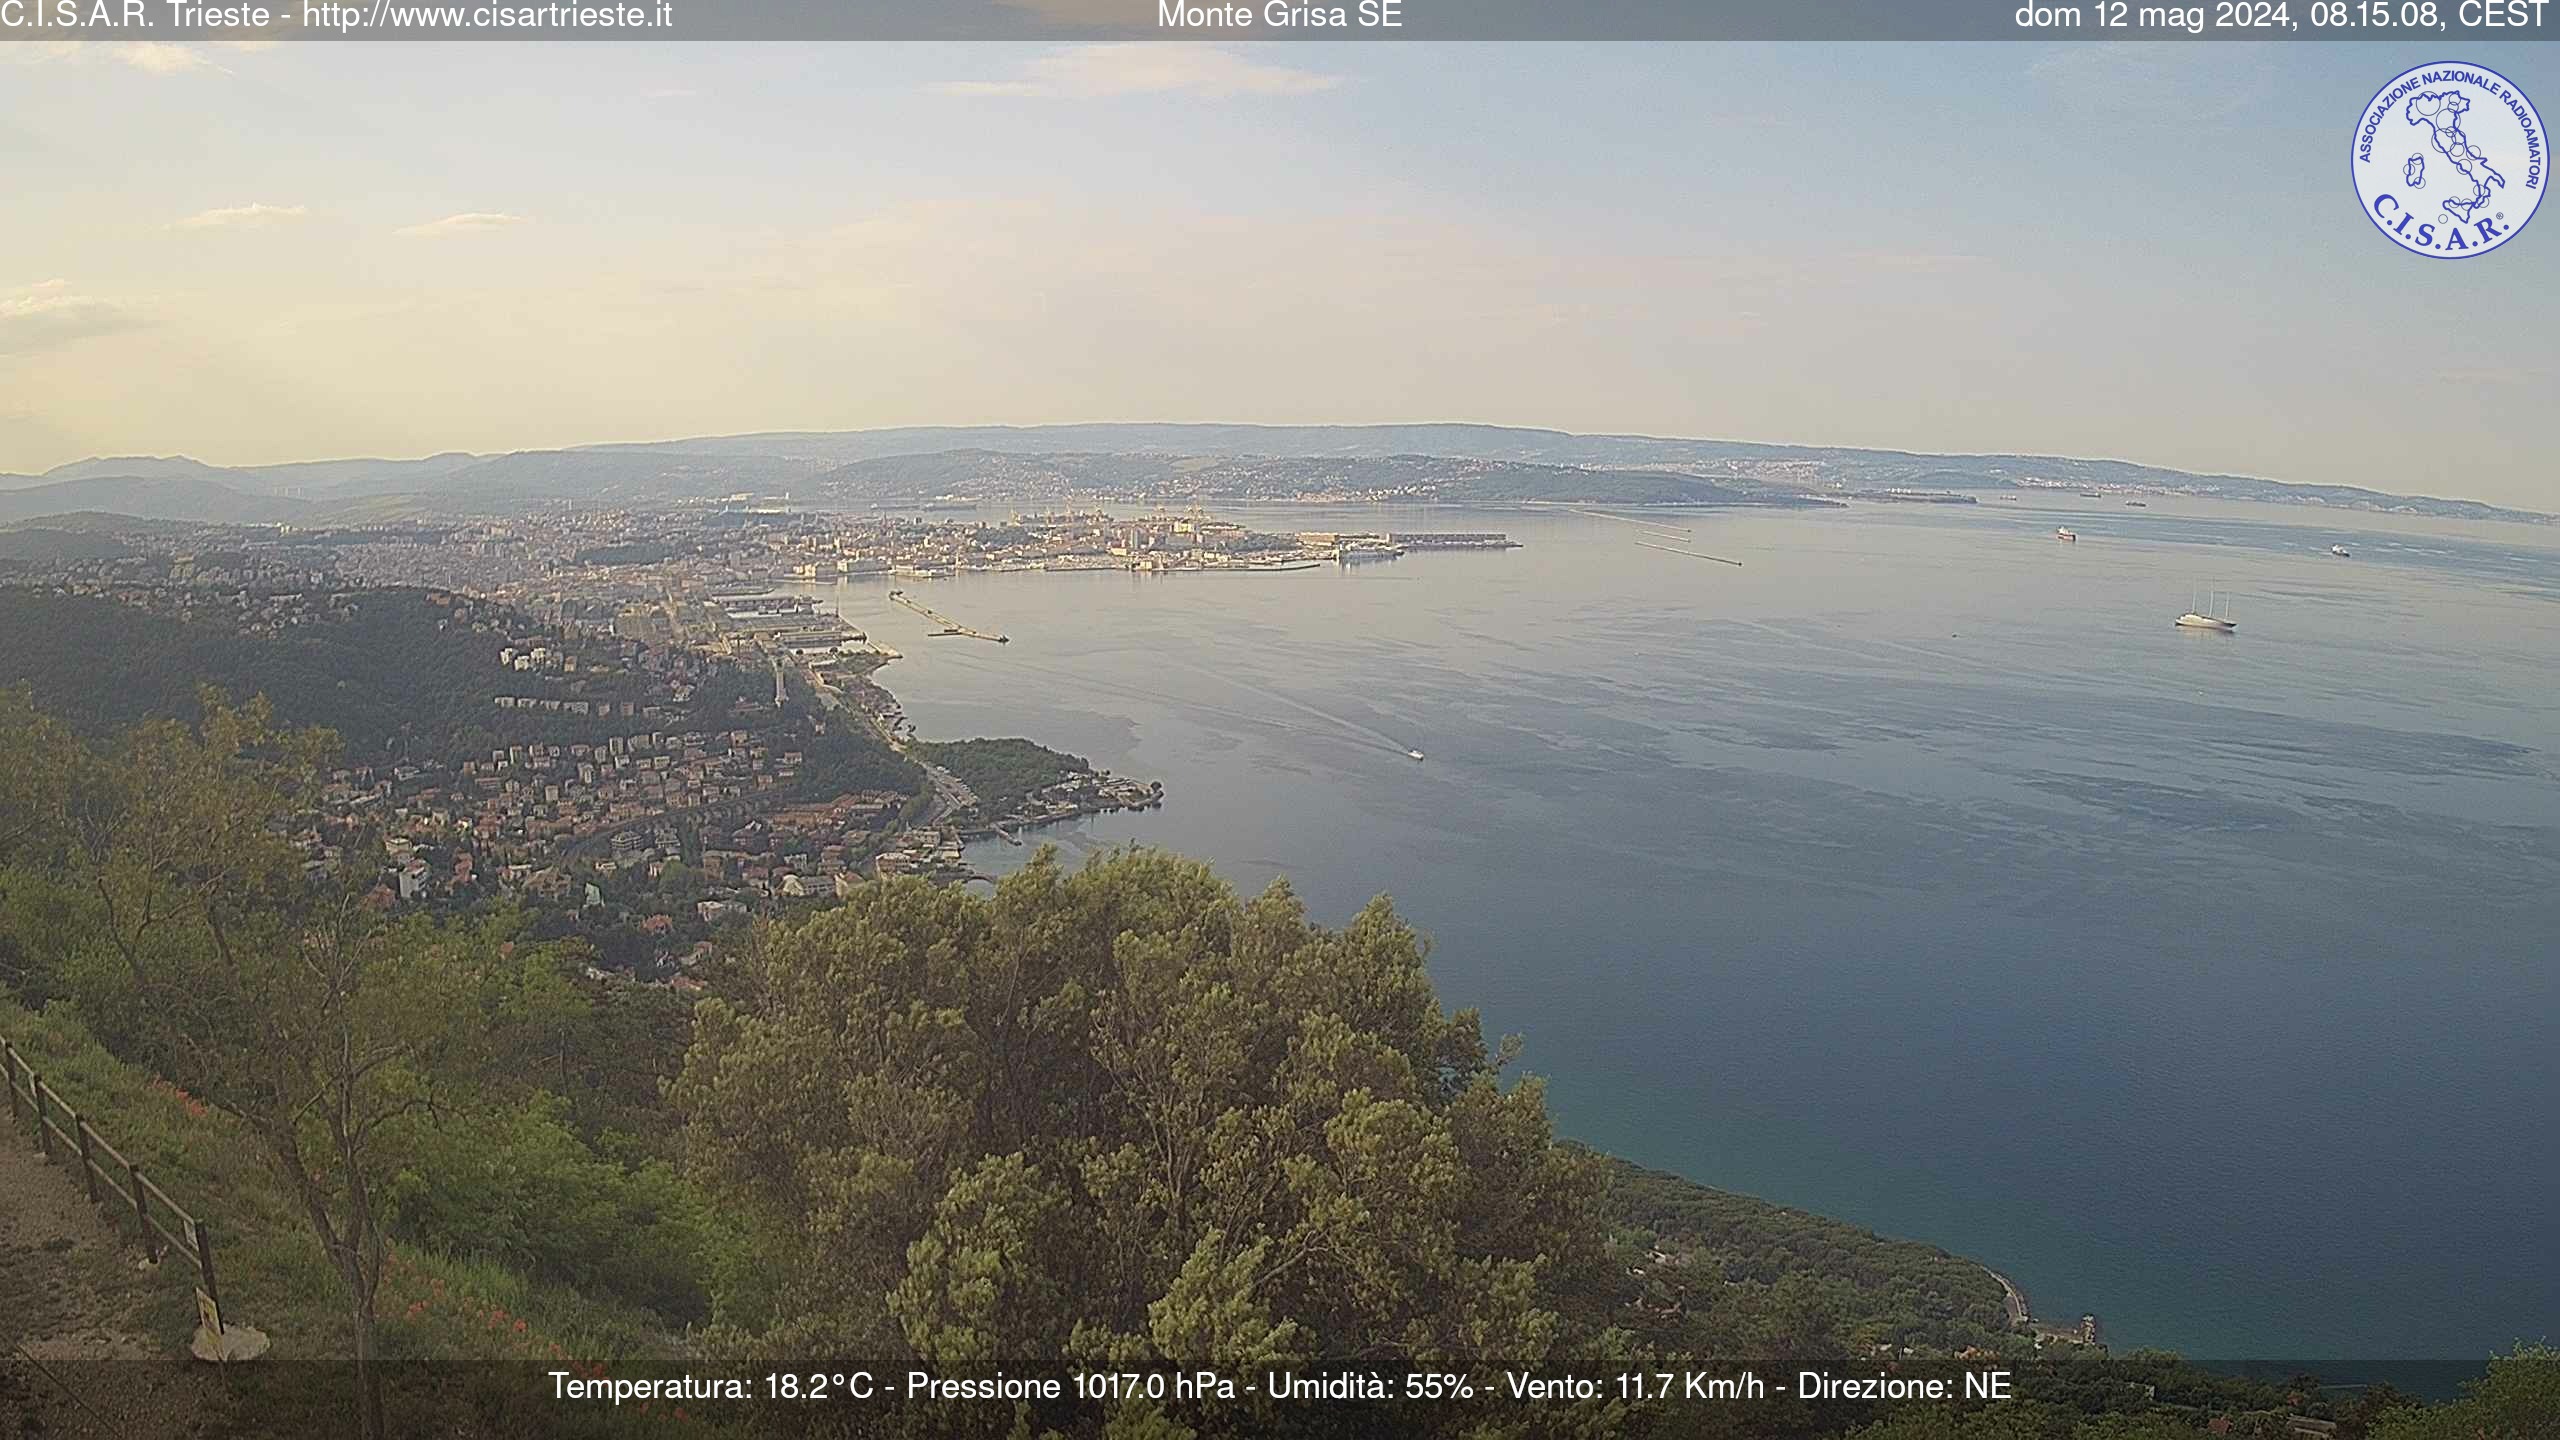 Trieste Di. 08:18